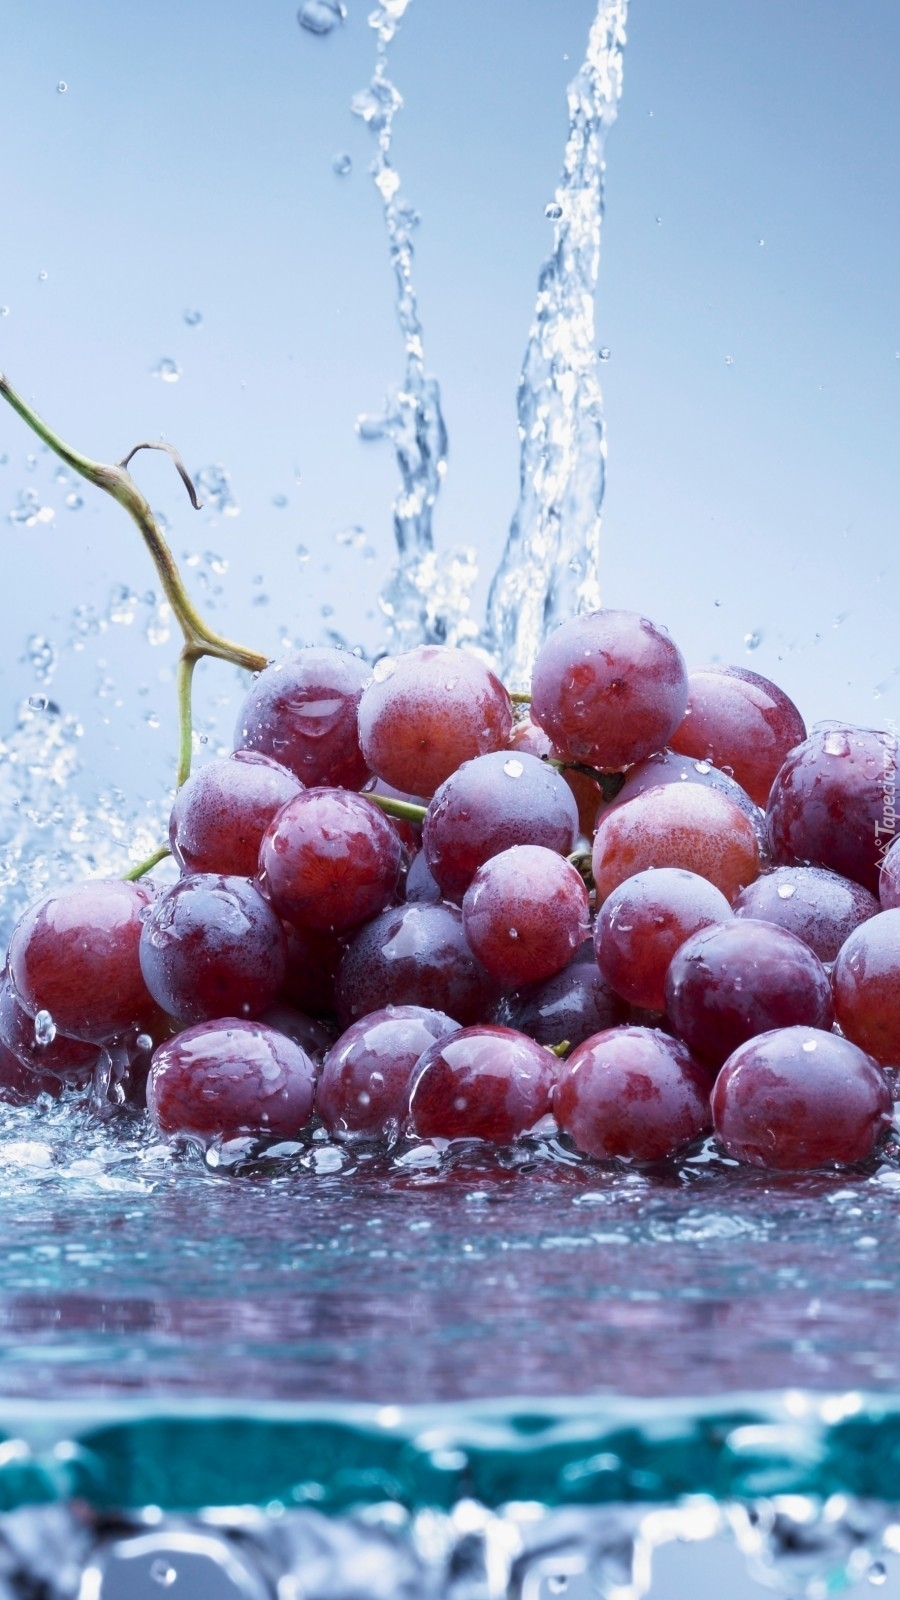 Winogrona w wodzie